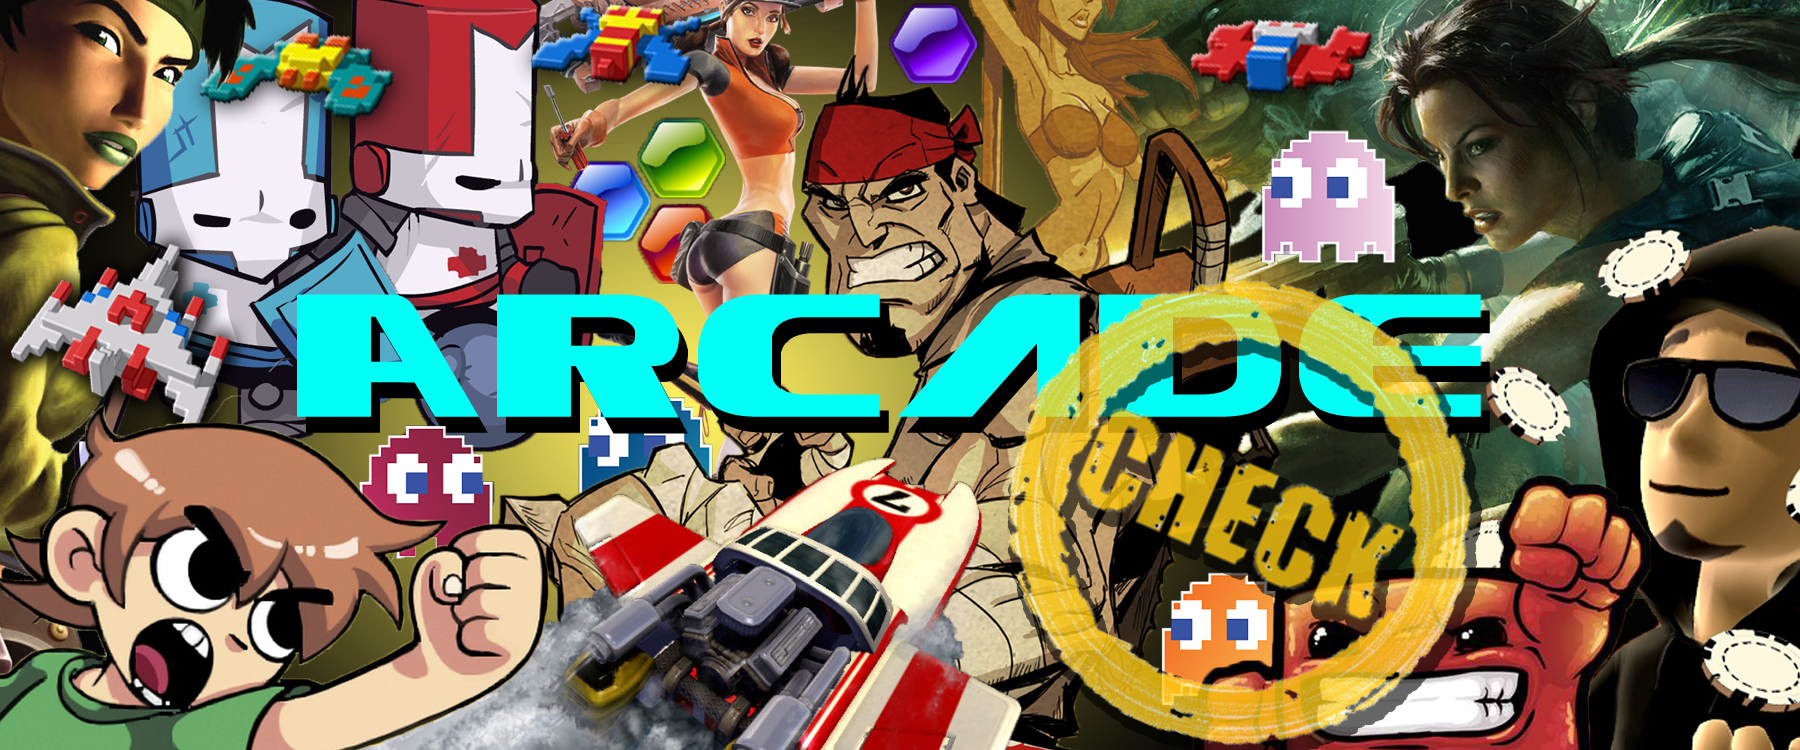 Arcade Check Capcom Arcade Cabinet News Gamersglobal De